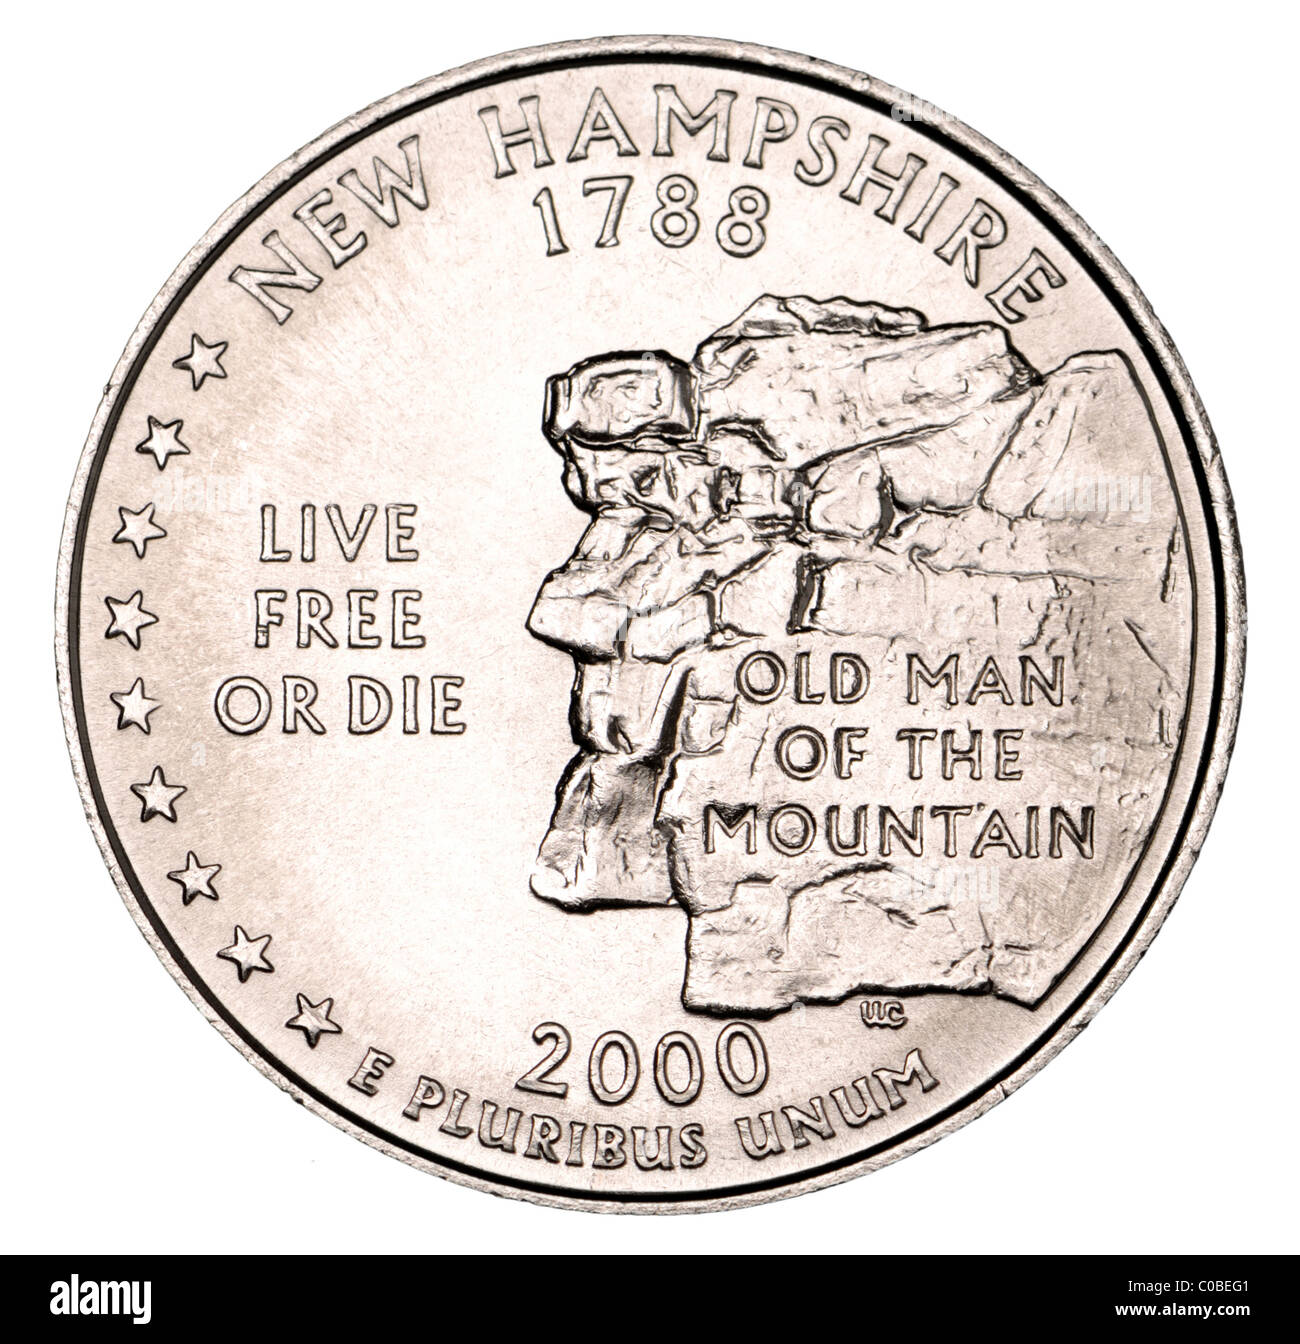 US Dollar Trimestre illustrant le New Hampshire - vieil homme de la Montagne Banque D'Images